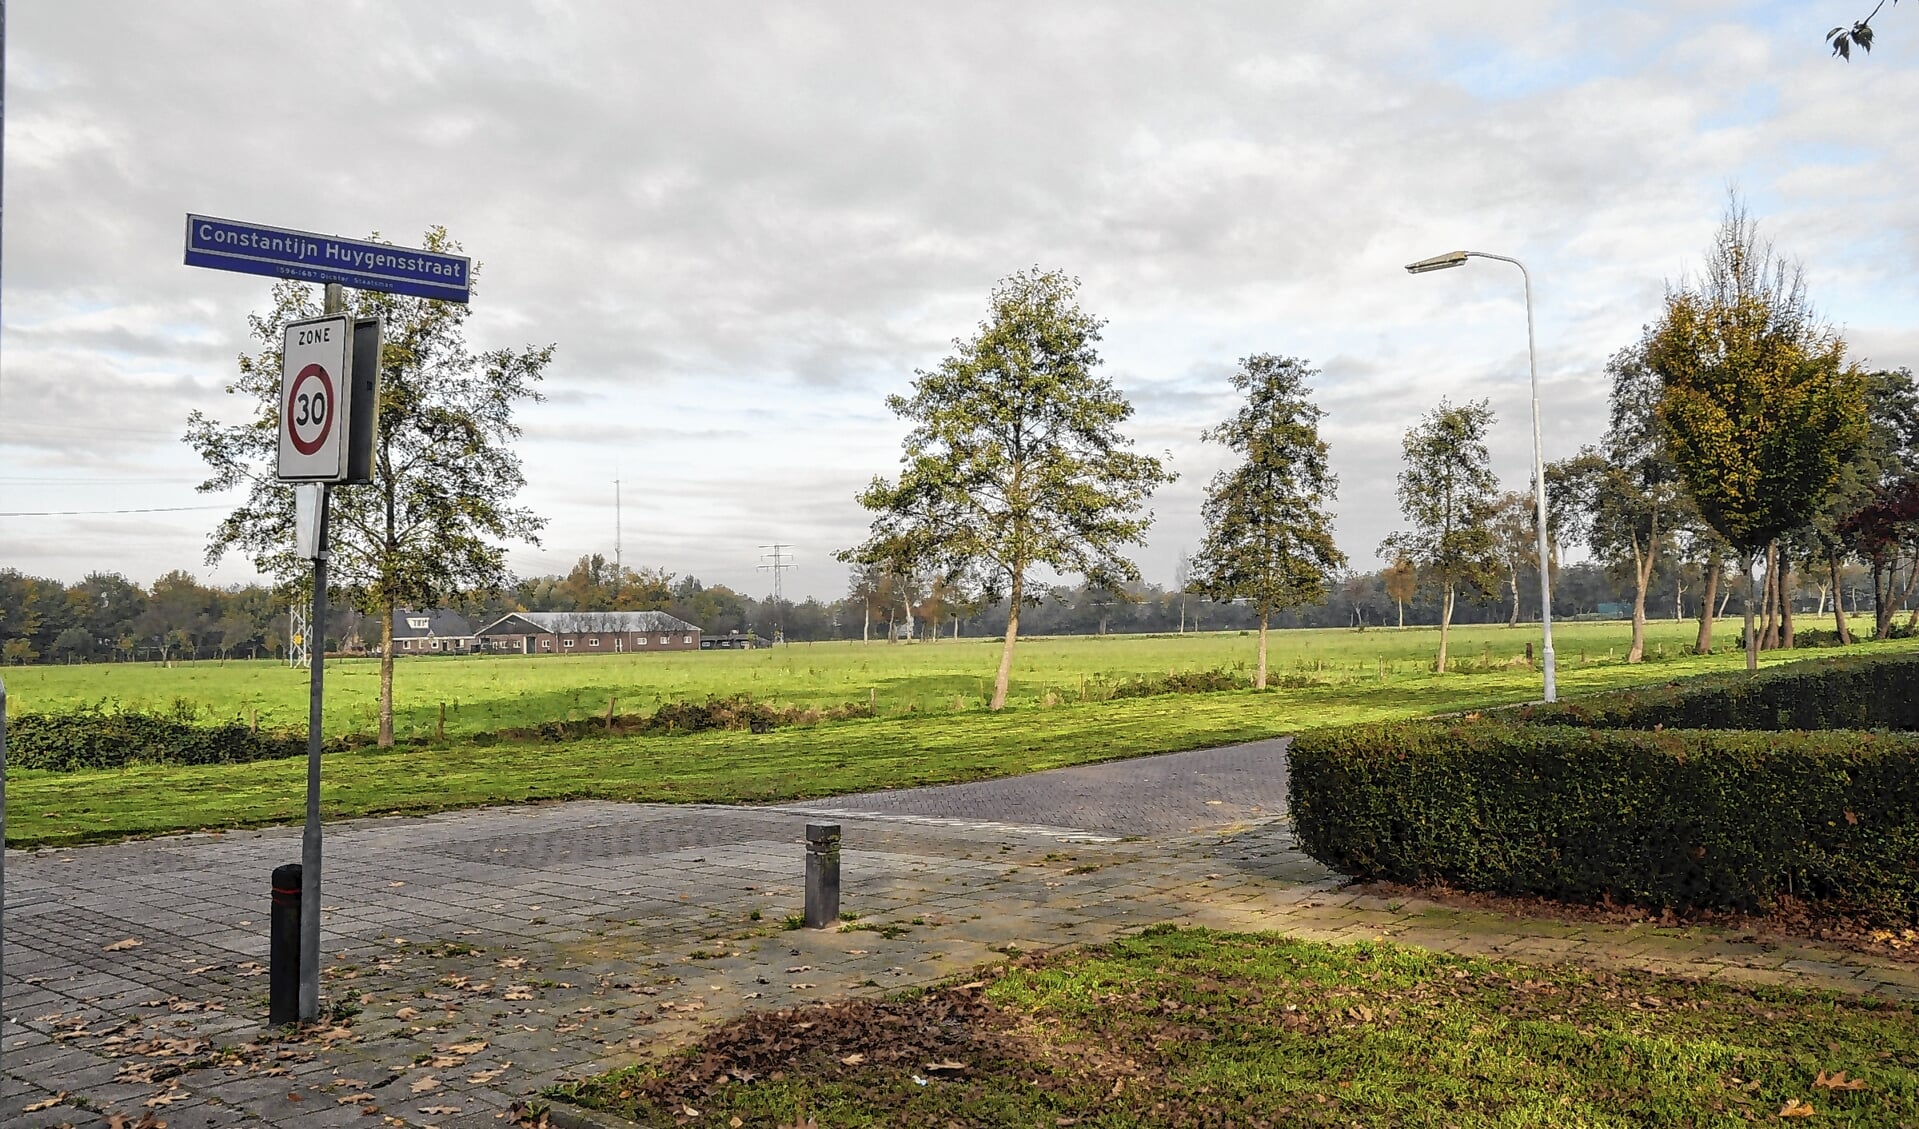 Als de westelijke rondweg van Barneveld er komt, zal deze weg in het gebied globaal tussen snelweg A30 en de Constantijn Huygensstraat worden aangelegd. 